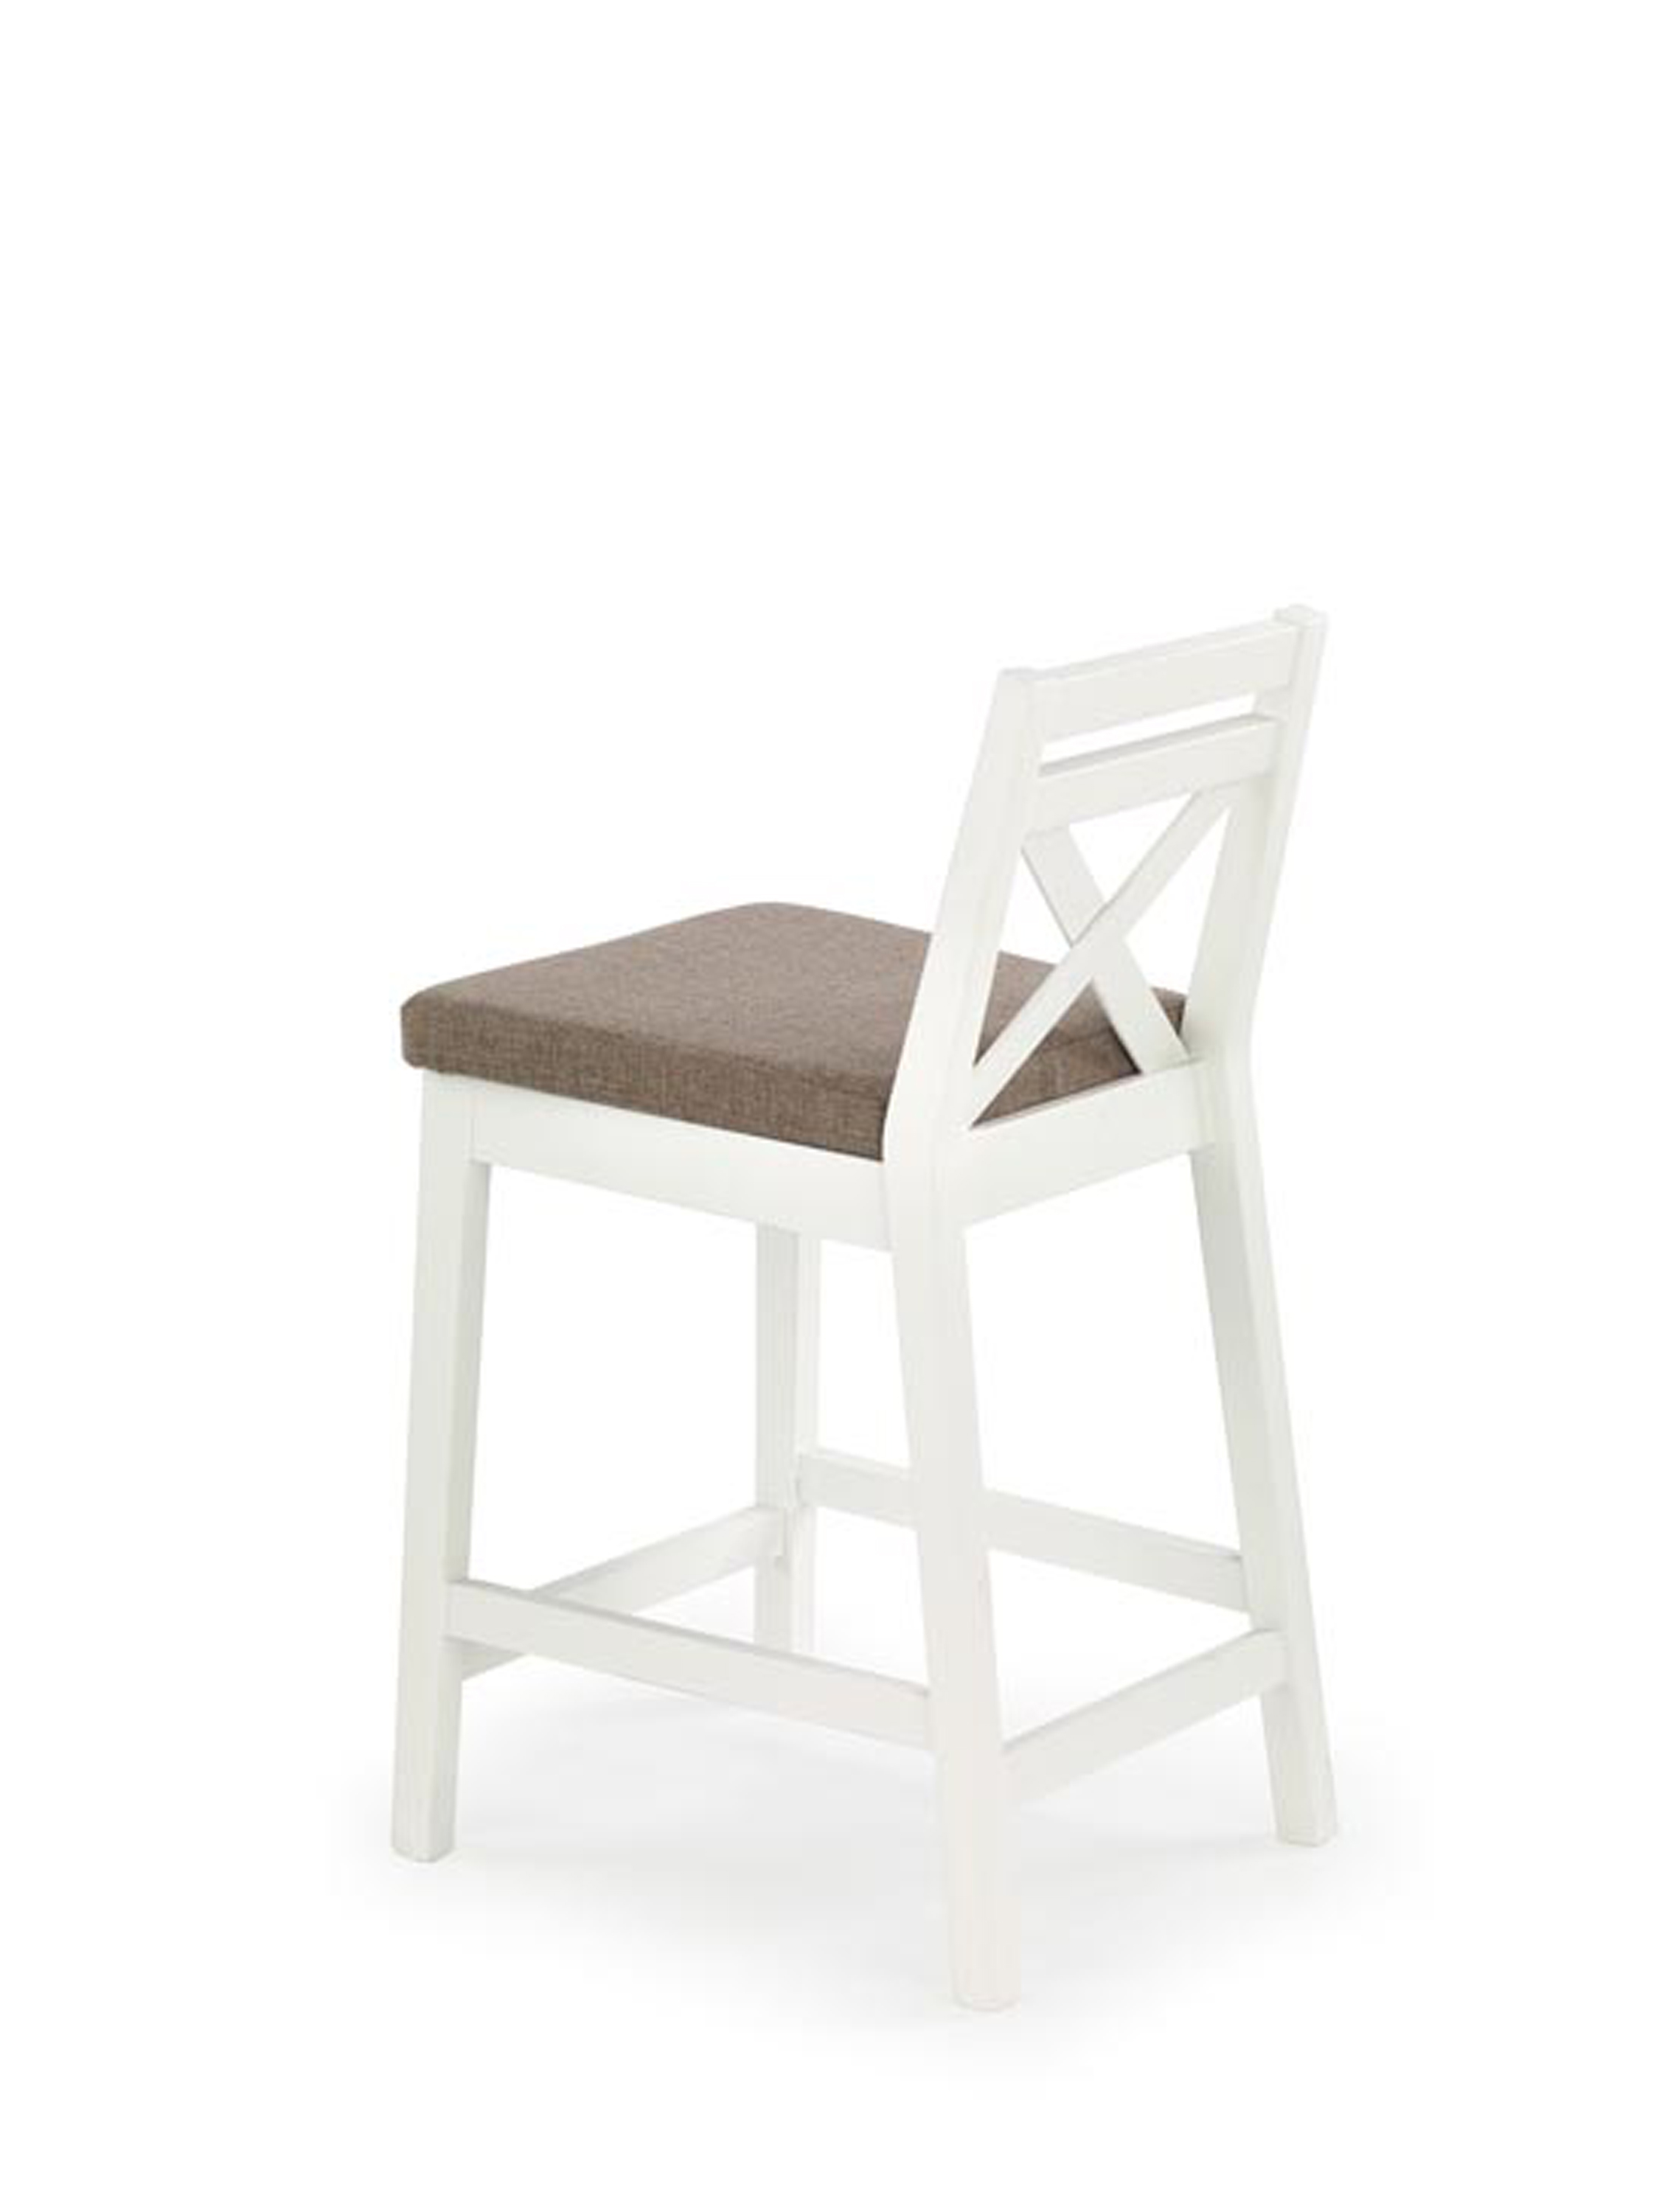 BORYS LOW krzesło barowe niskie biały / tap. Inari 23 borys low krzesło barowe niskie biały / tap. inari 23